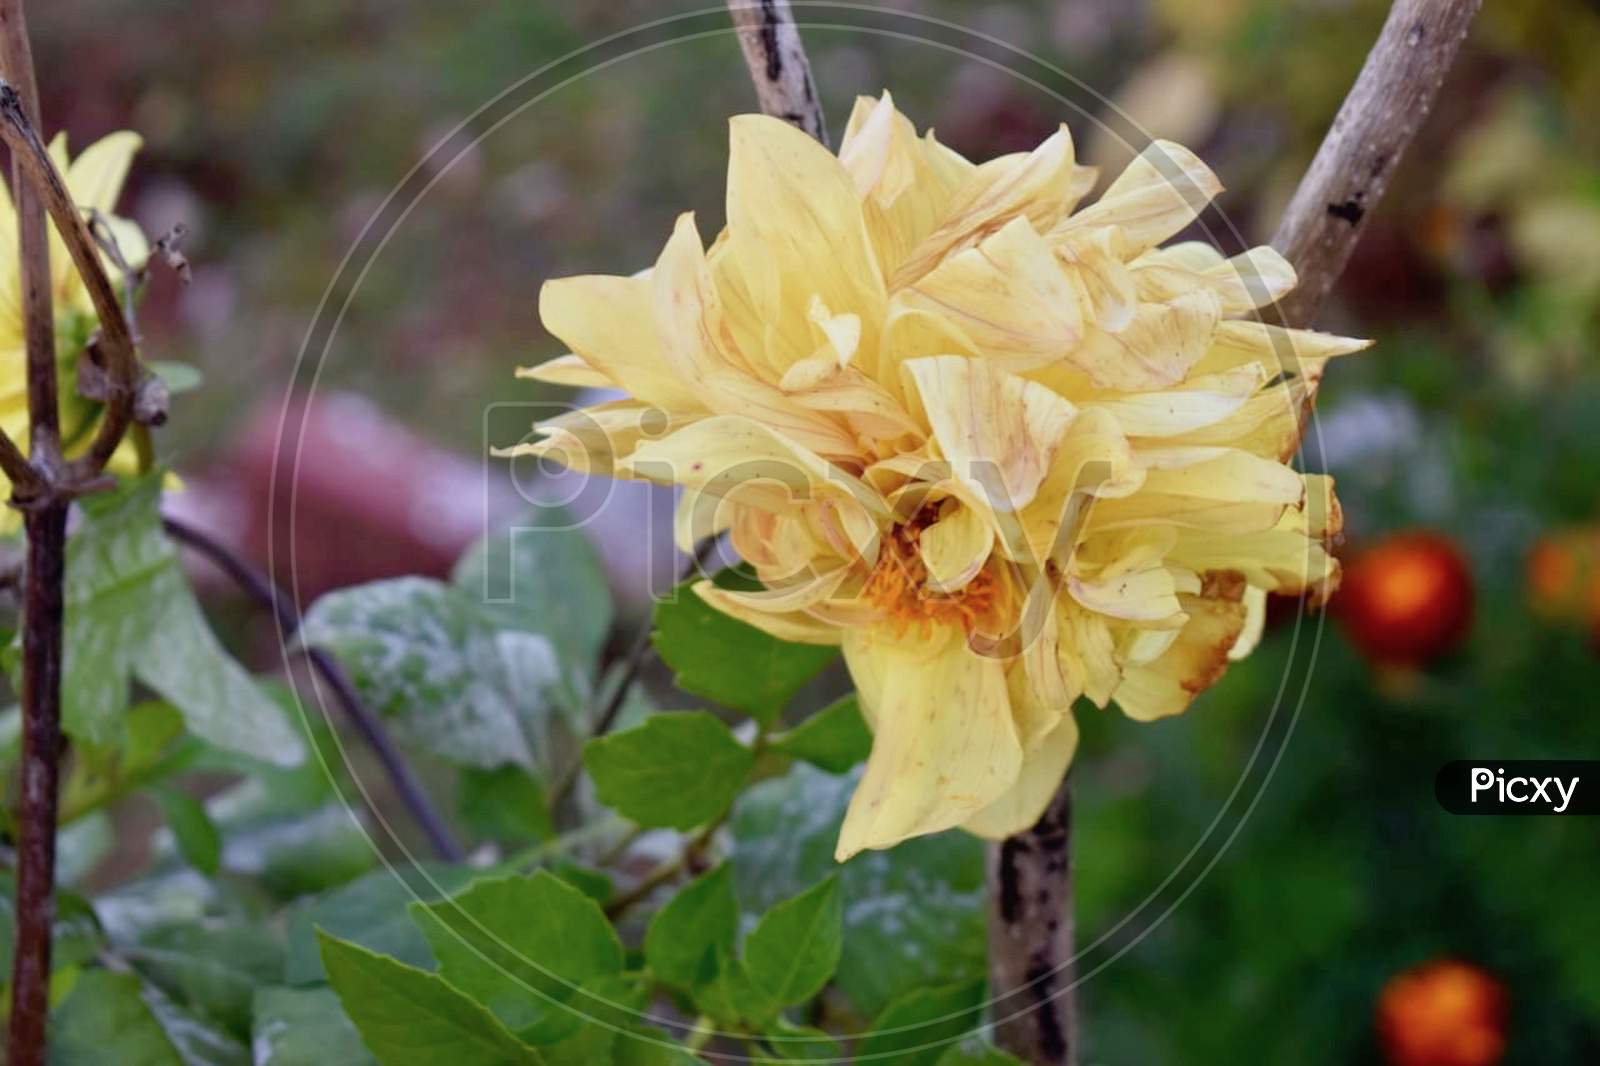 Yellow Flower in Garden Stock Photos.Netarhat, Jharkhand 2020